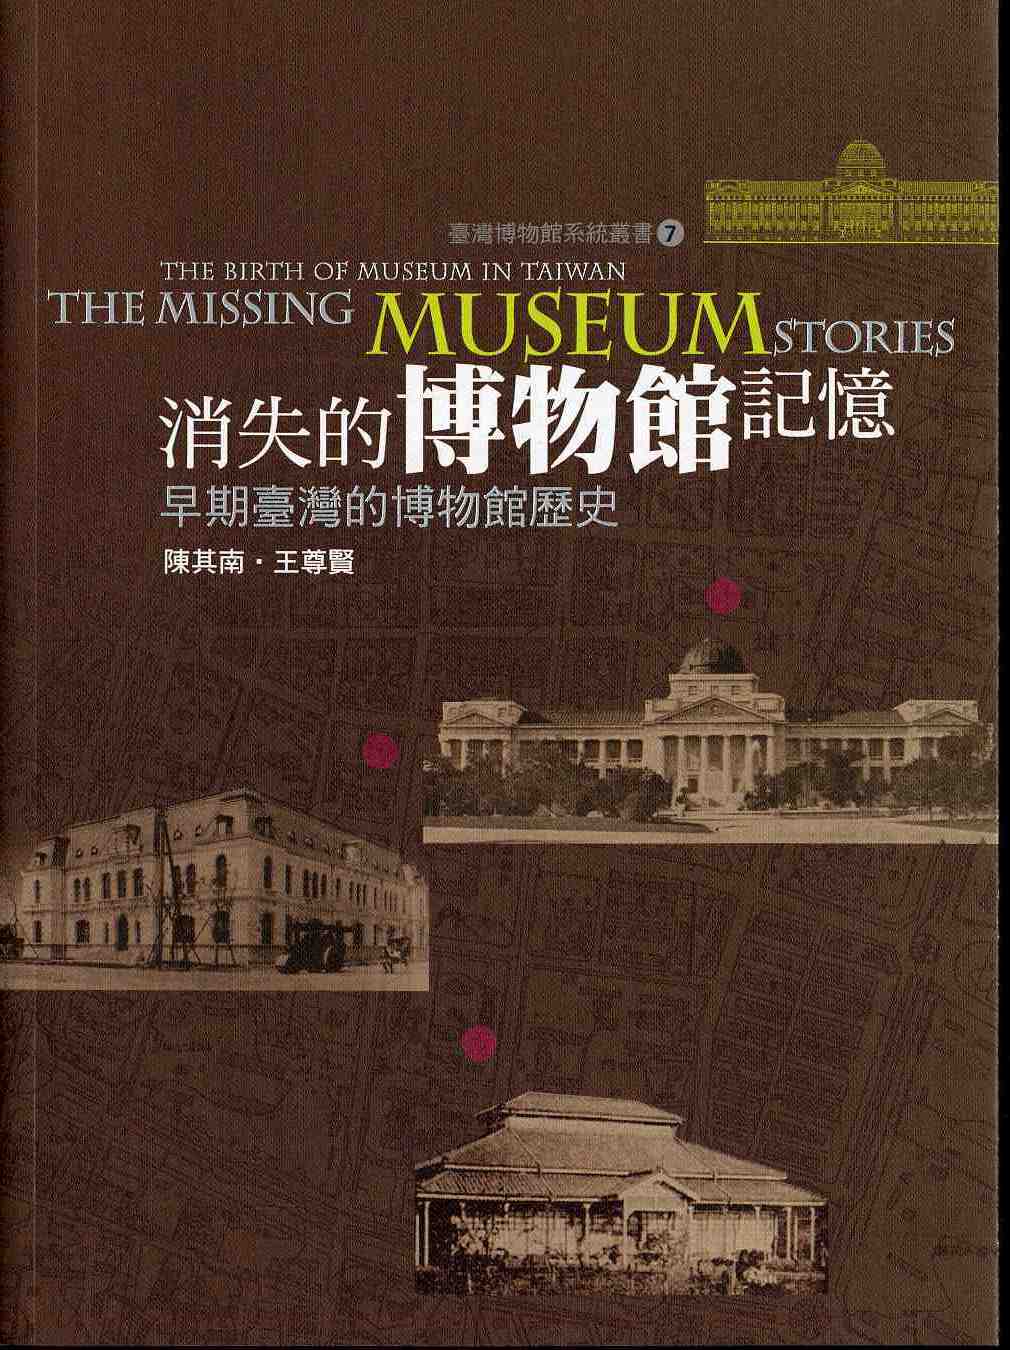 臺灣博物館系統叢書(7)消失的博物館記憶：早期臺灣的博物館史